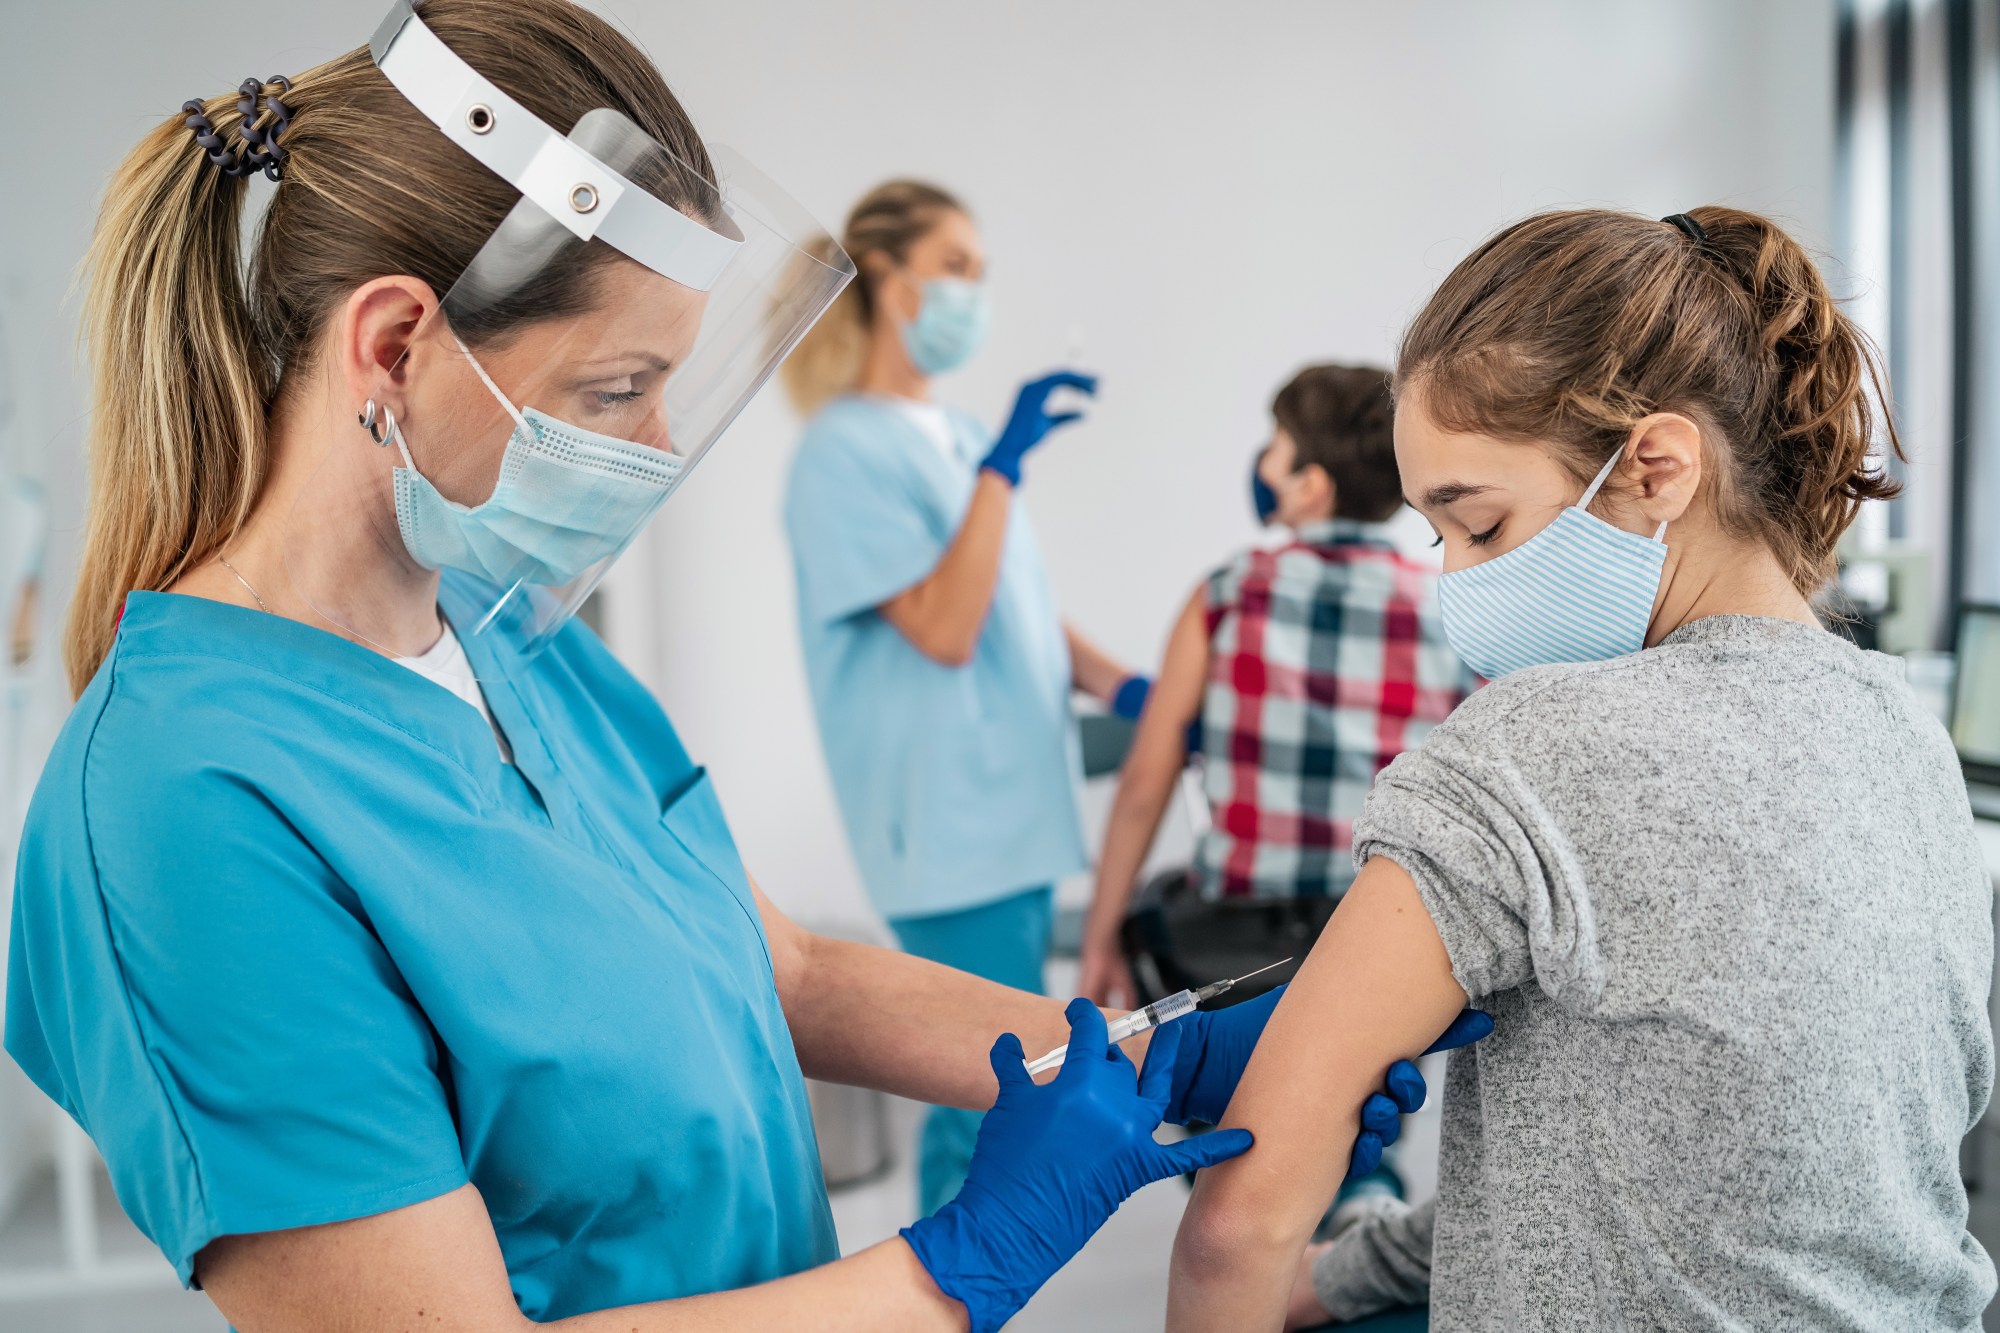 8 тысяч заявлений на вакцинацию подростков против COVID-19 подано в Екатеринбурге